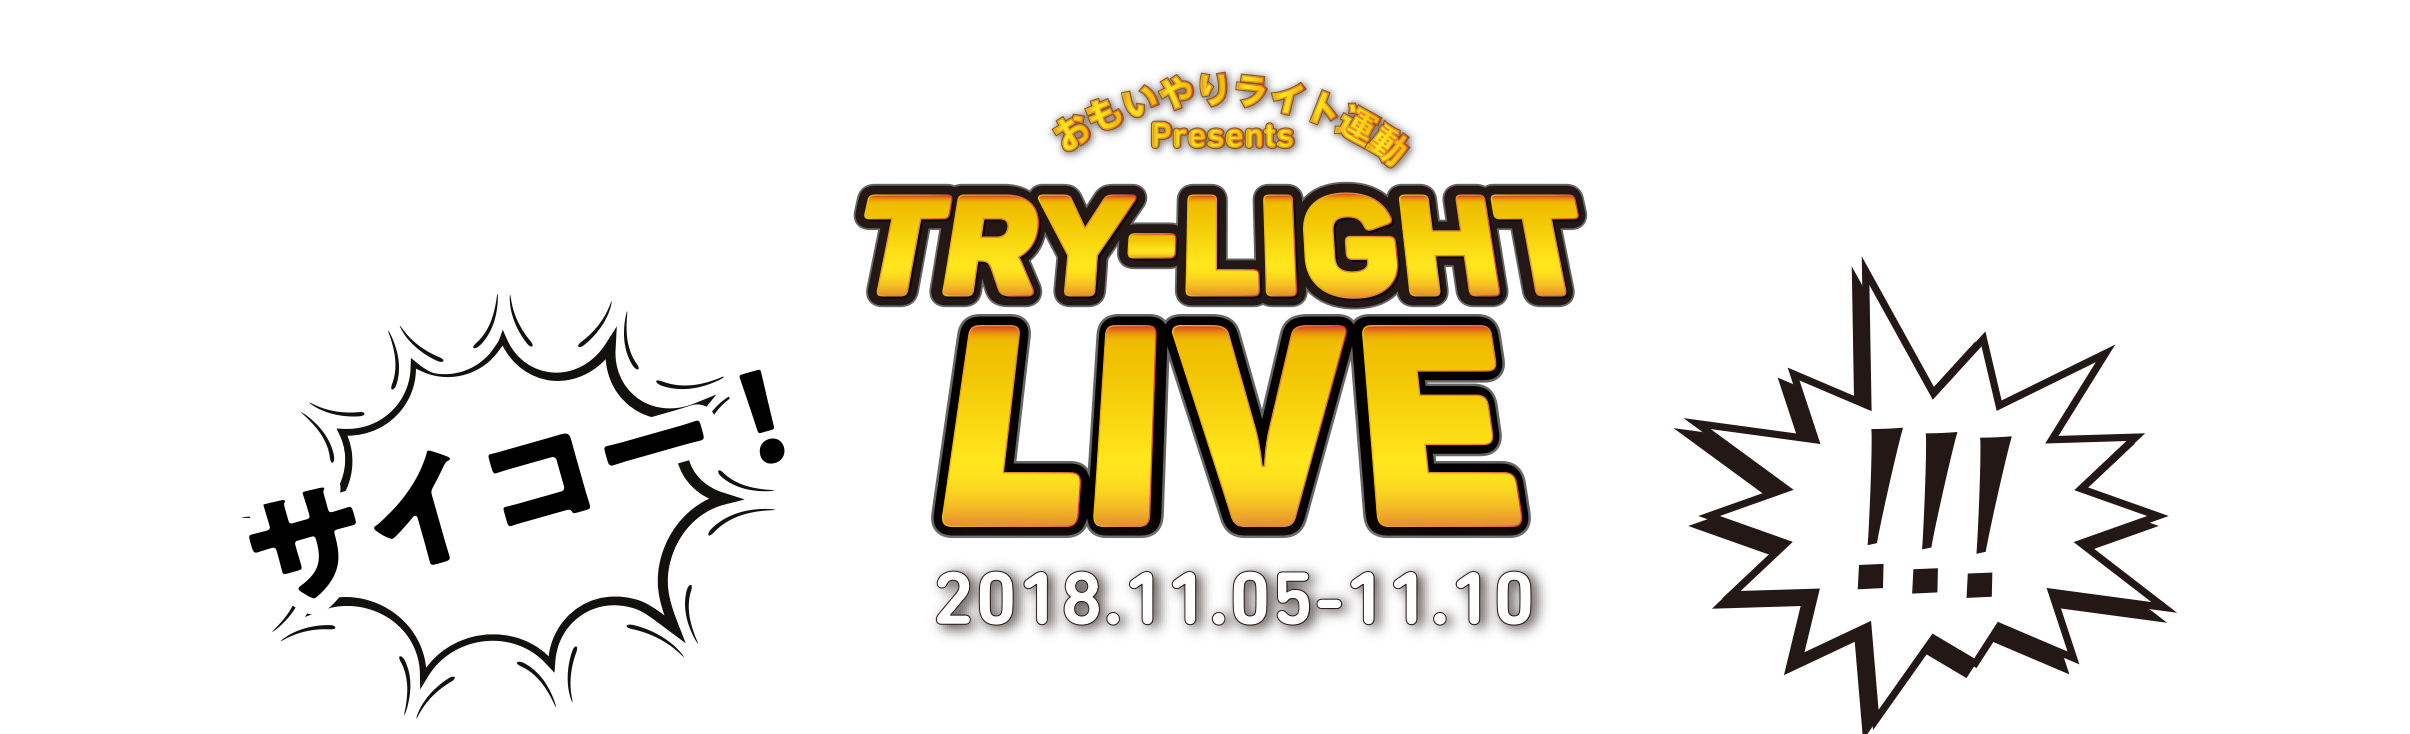 おもいやりライト運動Presents TRY-LIGHT LIVE